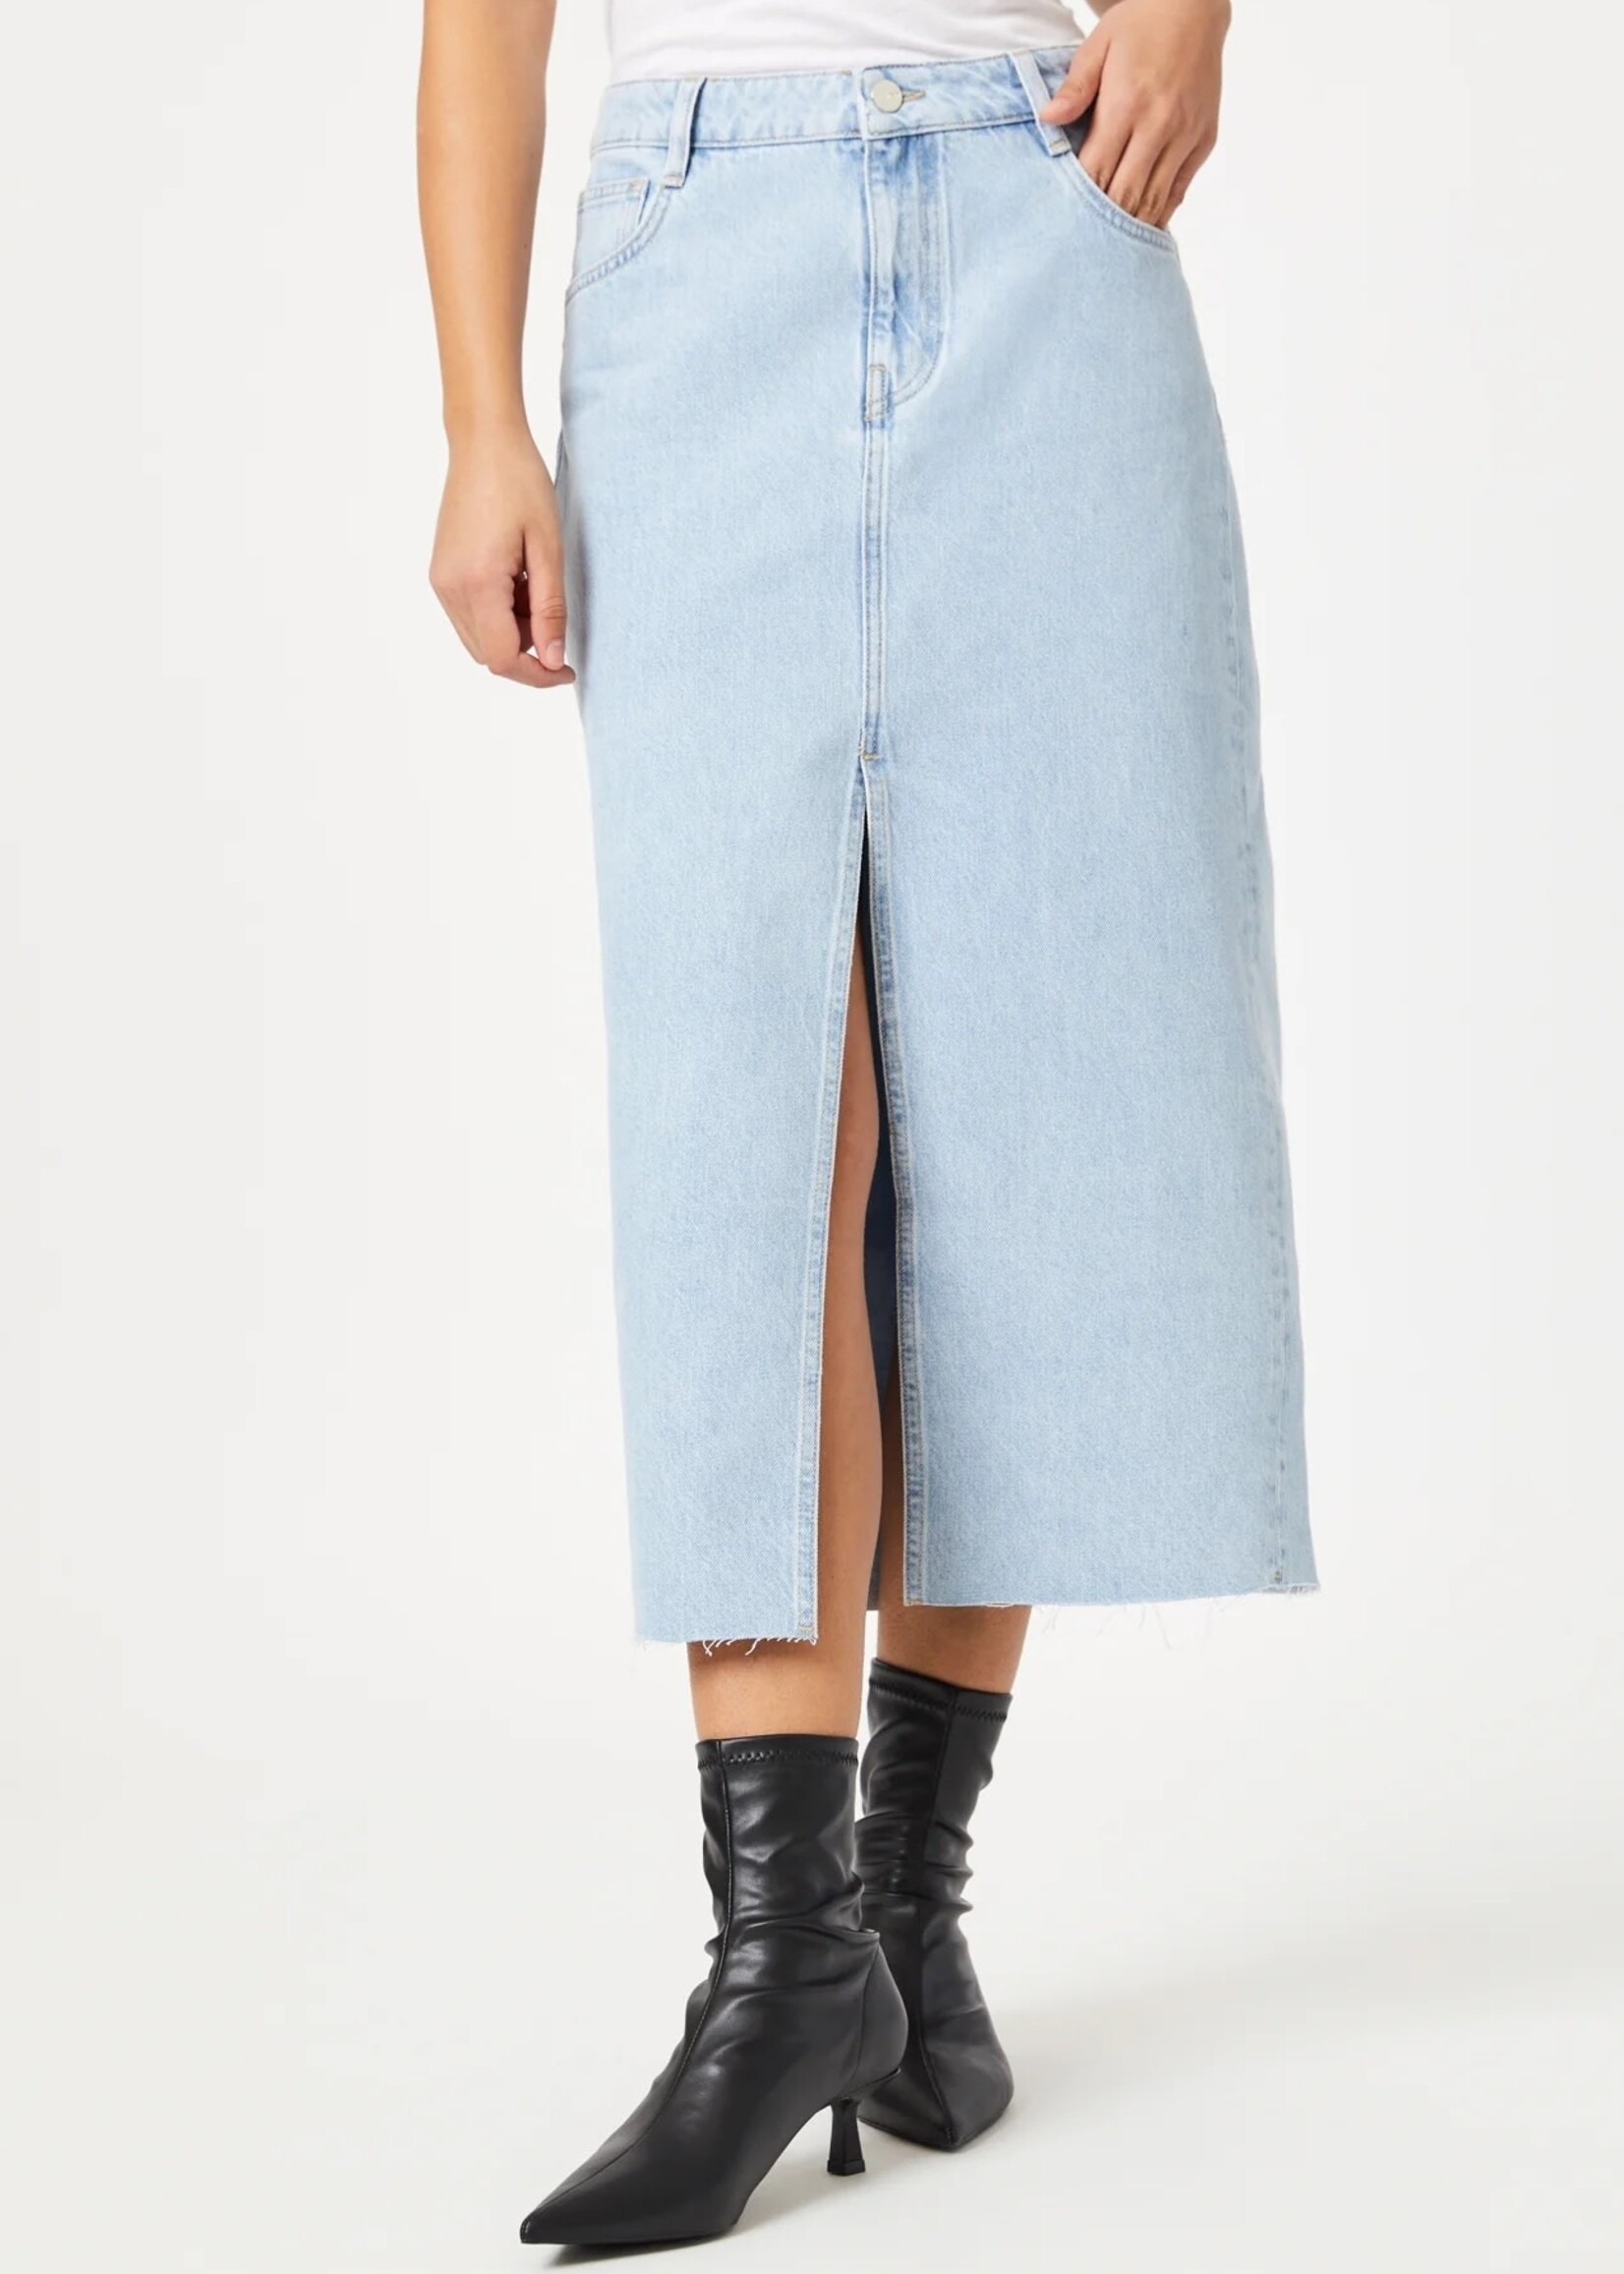 Marin Denim Skirt - Evelyn Lane Clothing Co.